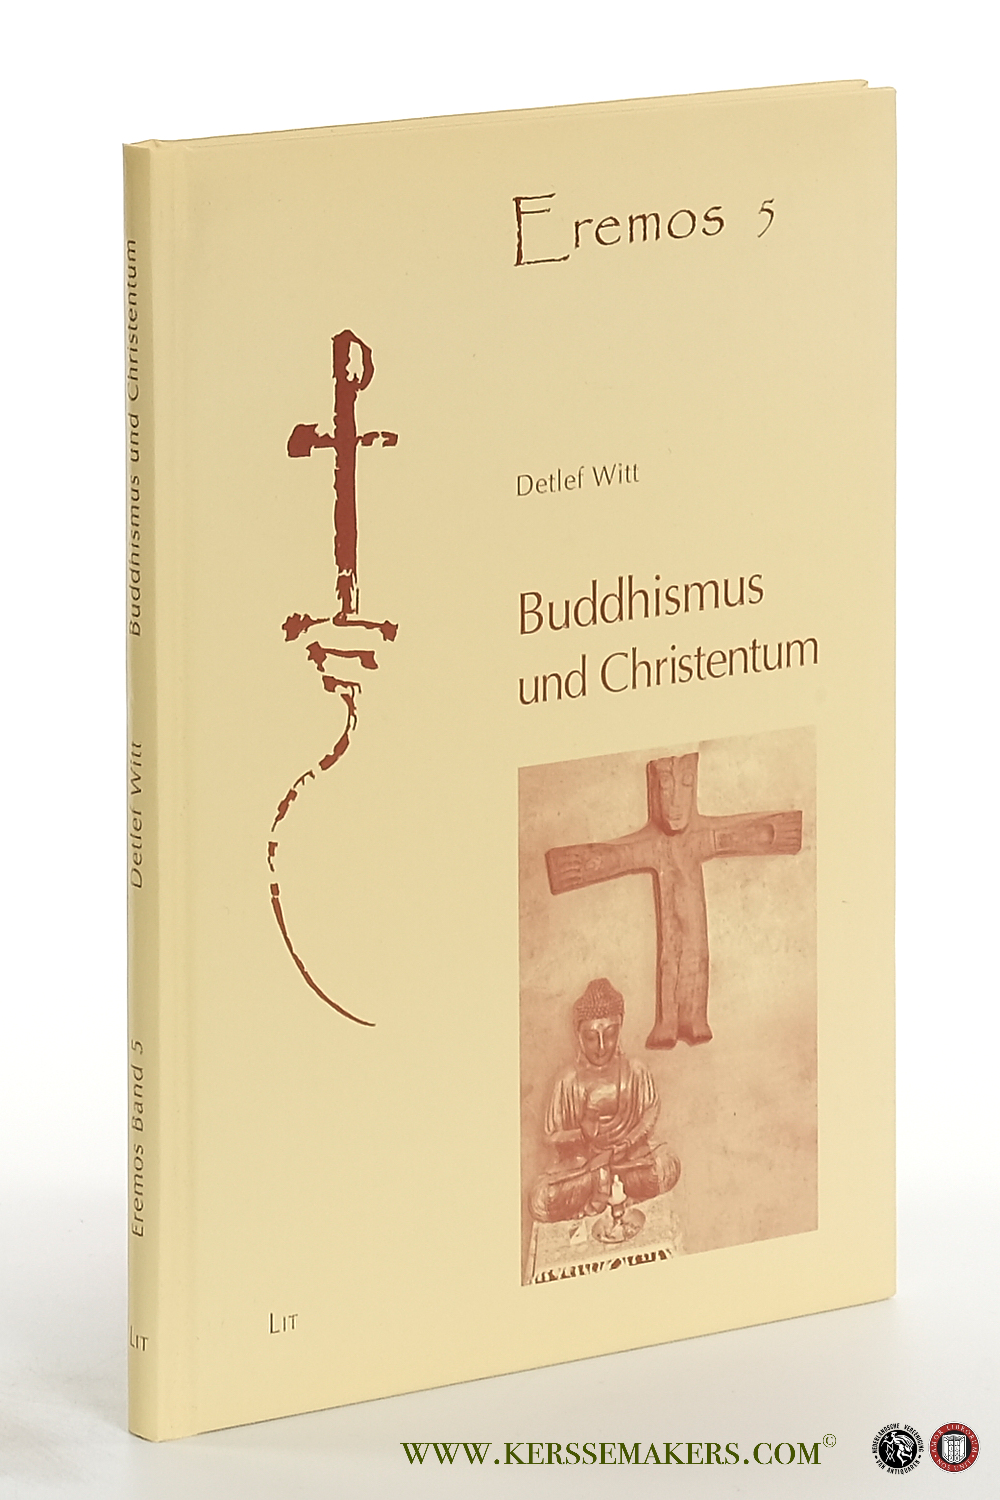 Buddhismus und Christentum. Die tiefgründigen Wechselbeziehungen zwischen Buddhismus und Christentum in den ersten Jahrhunderten. - Witt, Detlef.